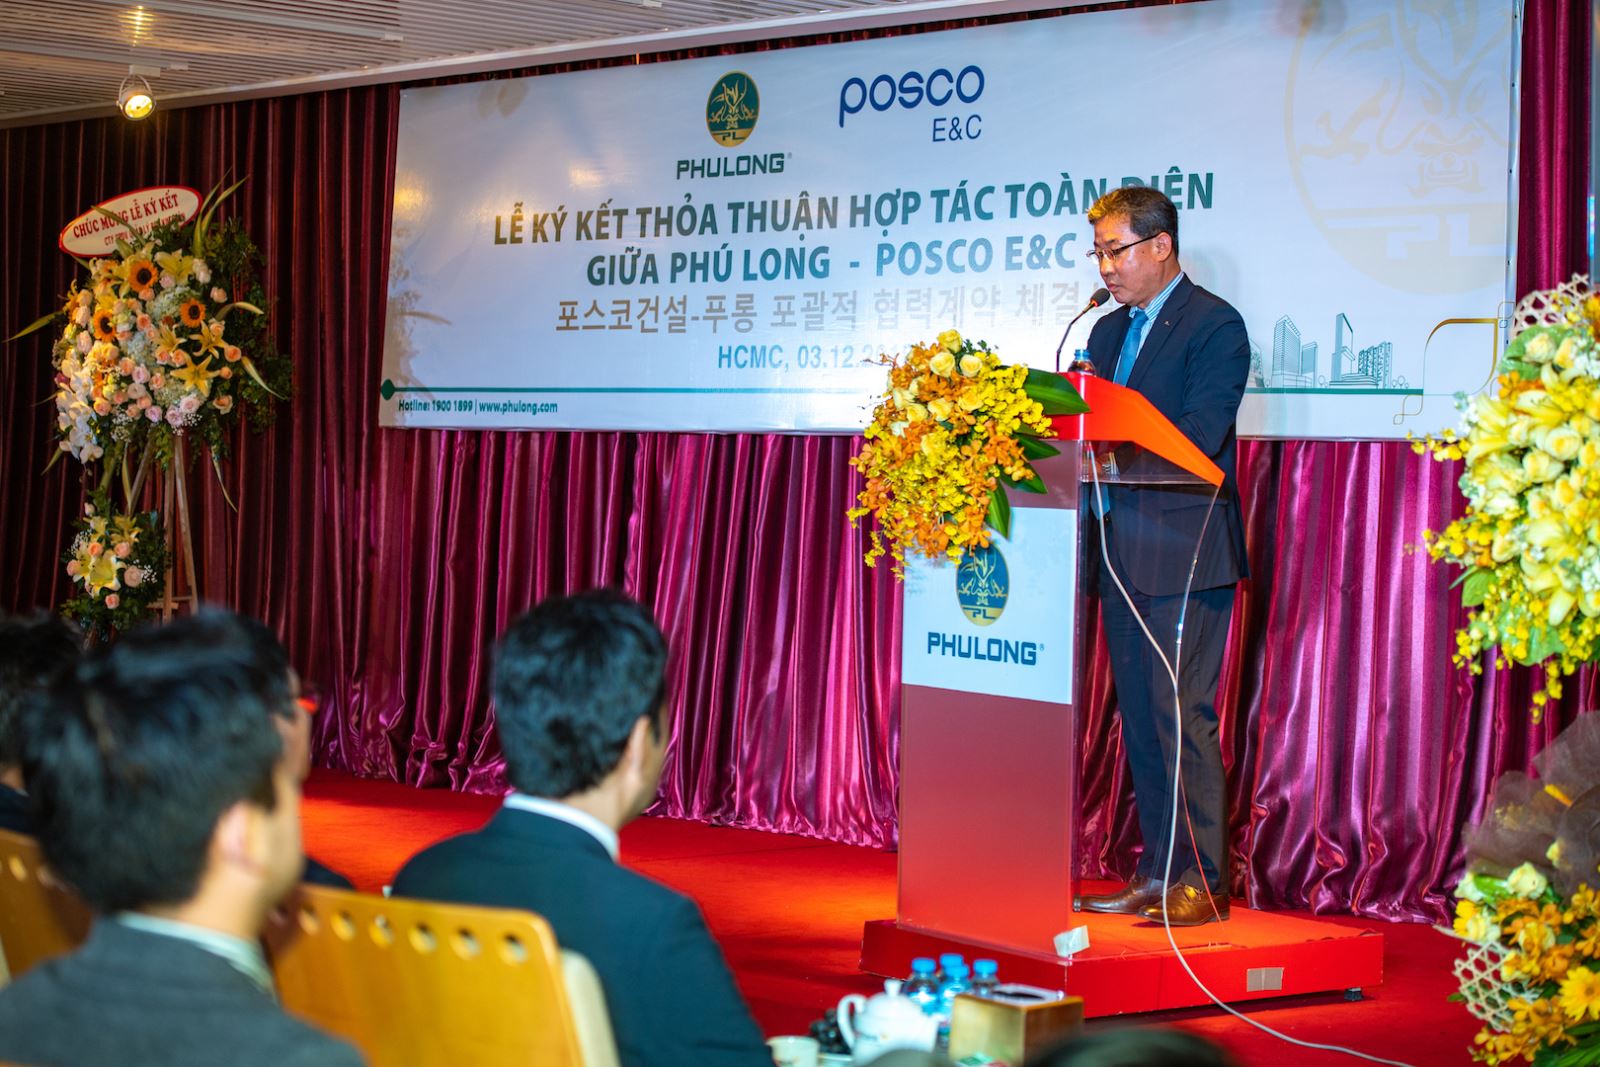 Ký kết thỏa thuận hợp tác toàn diện giữa Công ty Phú Long và Posco E&C